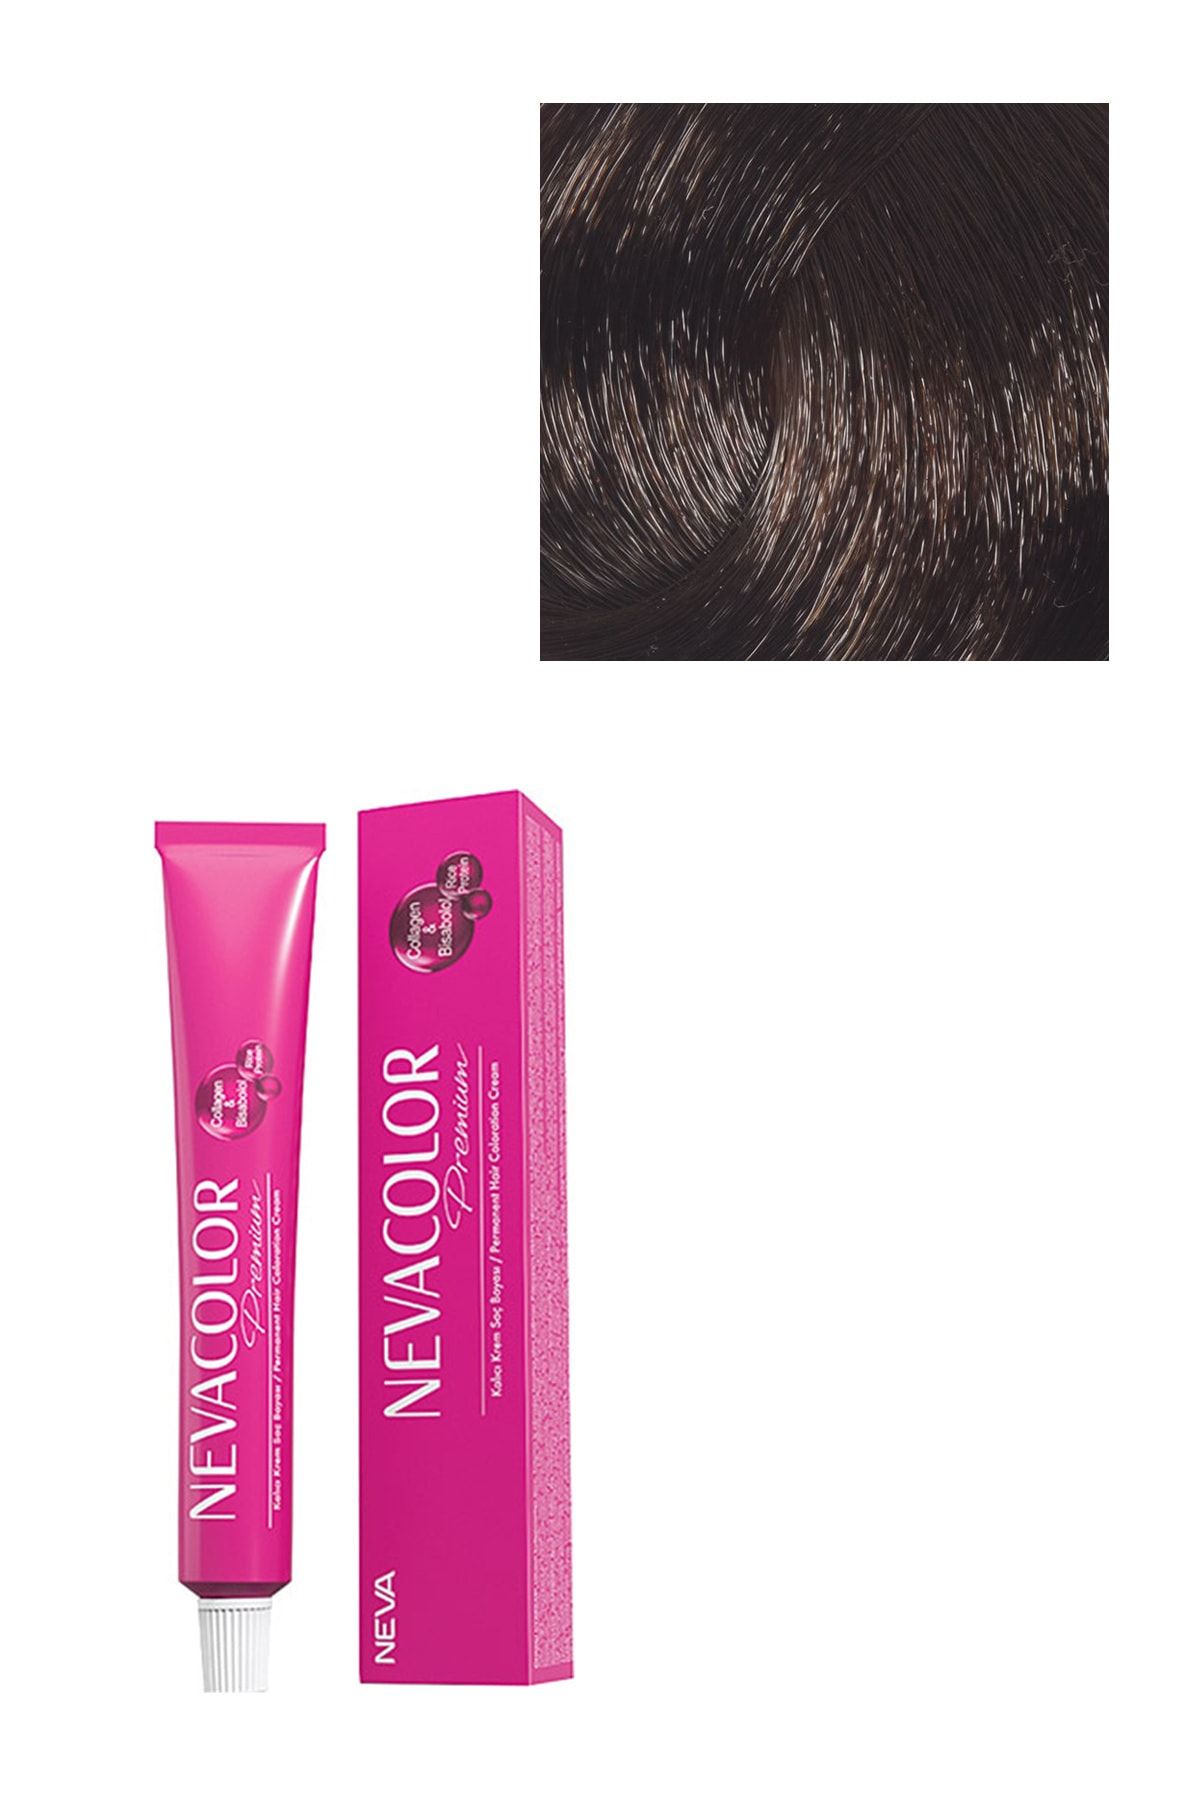 Neva Color Premium Kalıcı Saç Boyası 6.0 - Yoğun Koyu Kumral